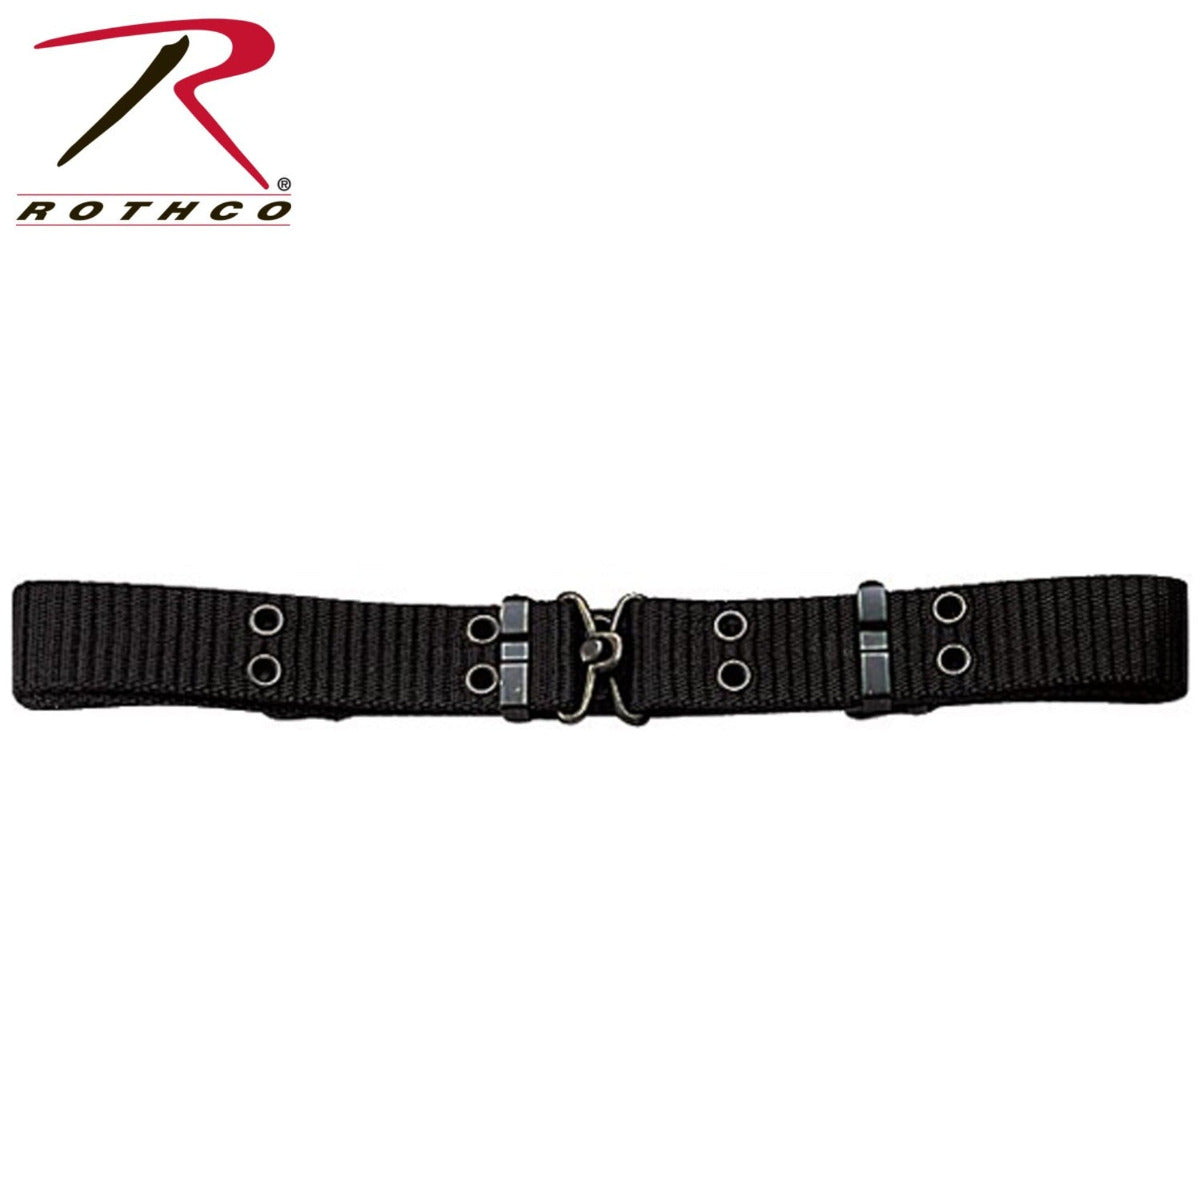 Image of Rothco's Mini-Pistol-Belt in black.